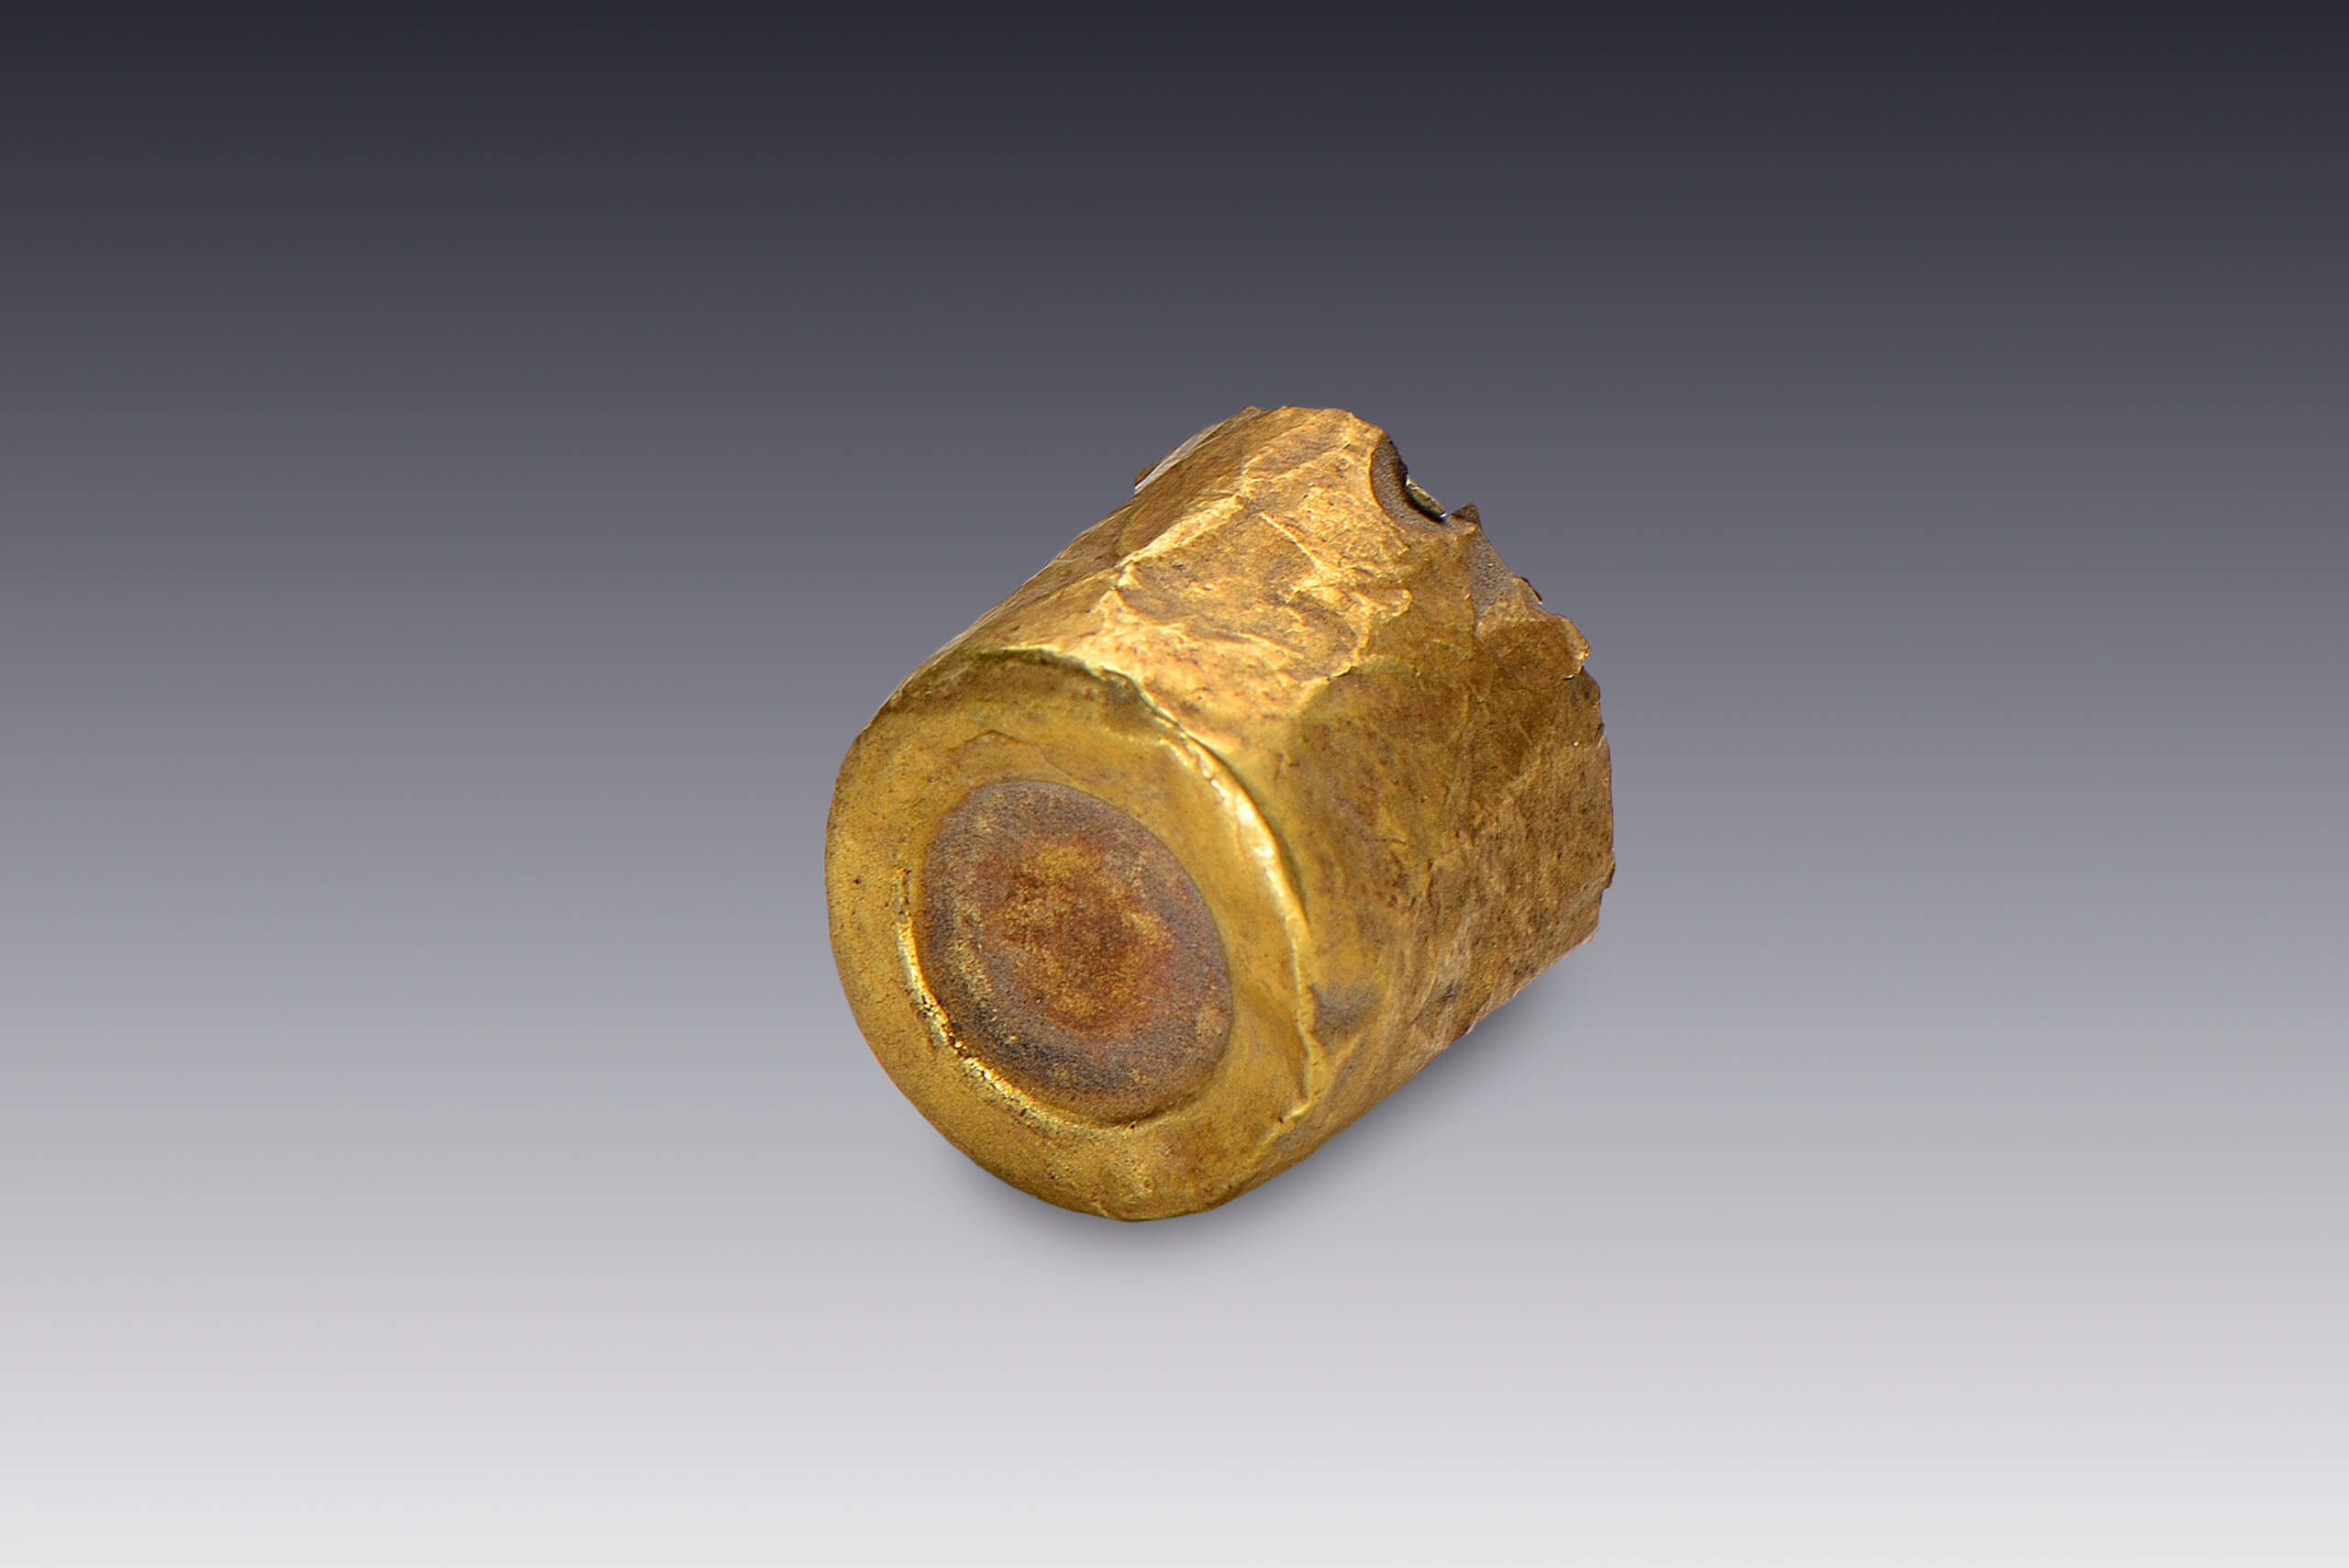 Tapones de orejeras de oro con turquesa y cristal | El México antiguo. Salas de Arte Prehispánico | Museo Amparo, Puebla